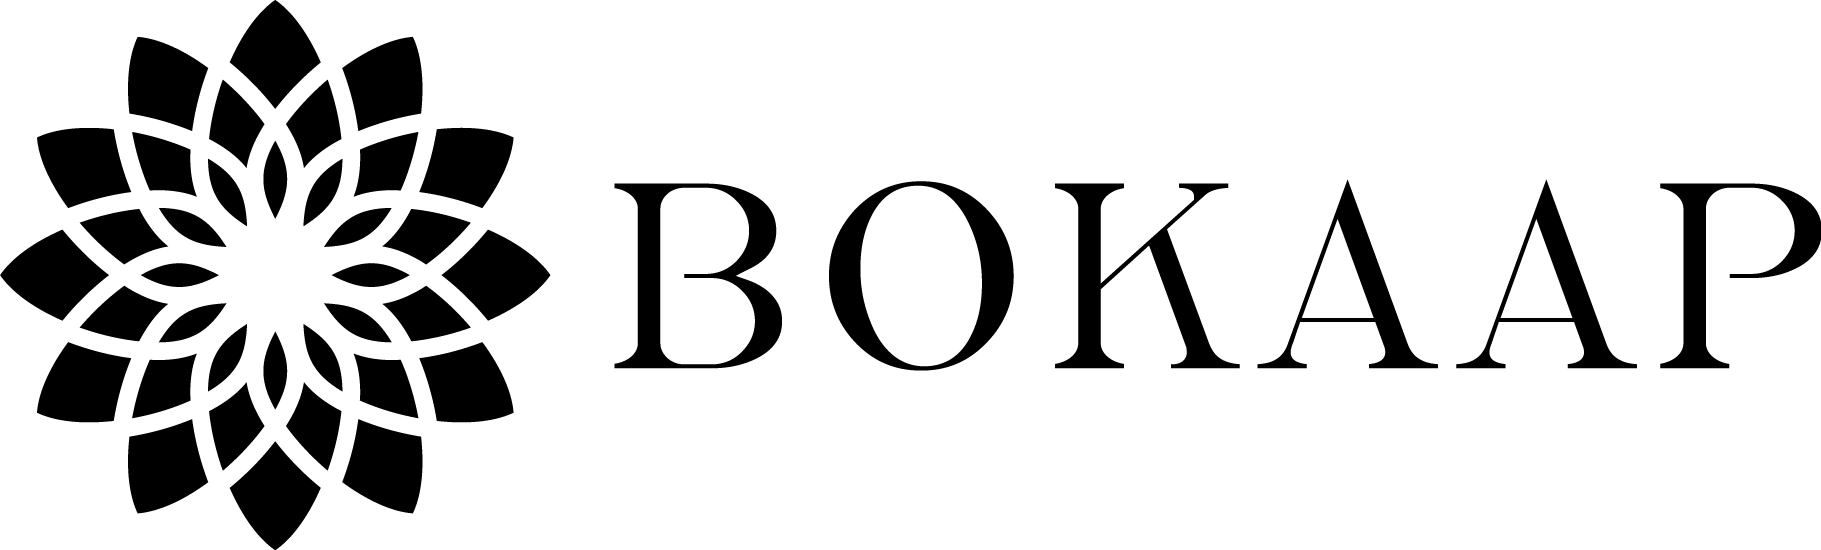 ボカープコーデックス ロゴ